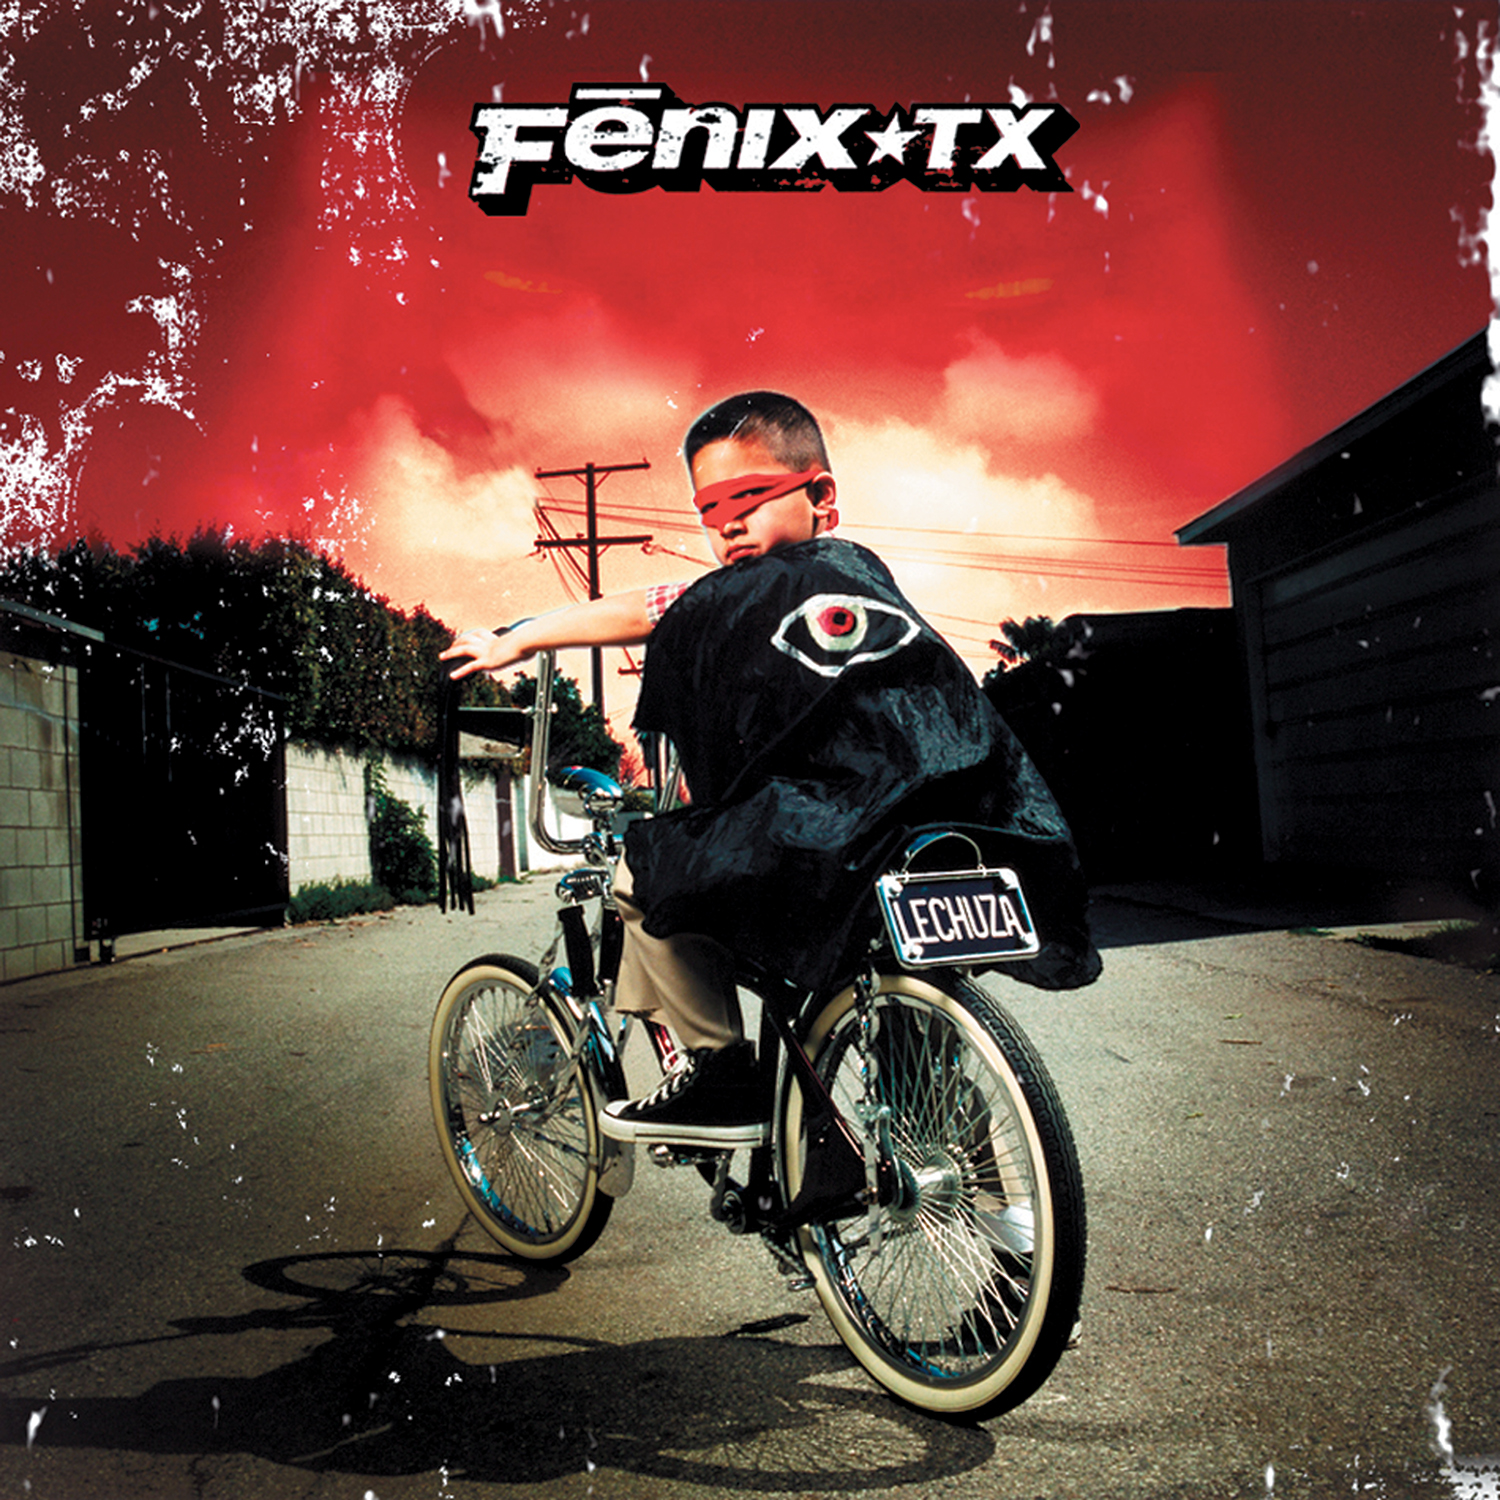 2001: Fenix TX, Lechuza